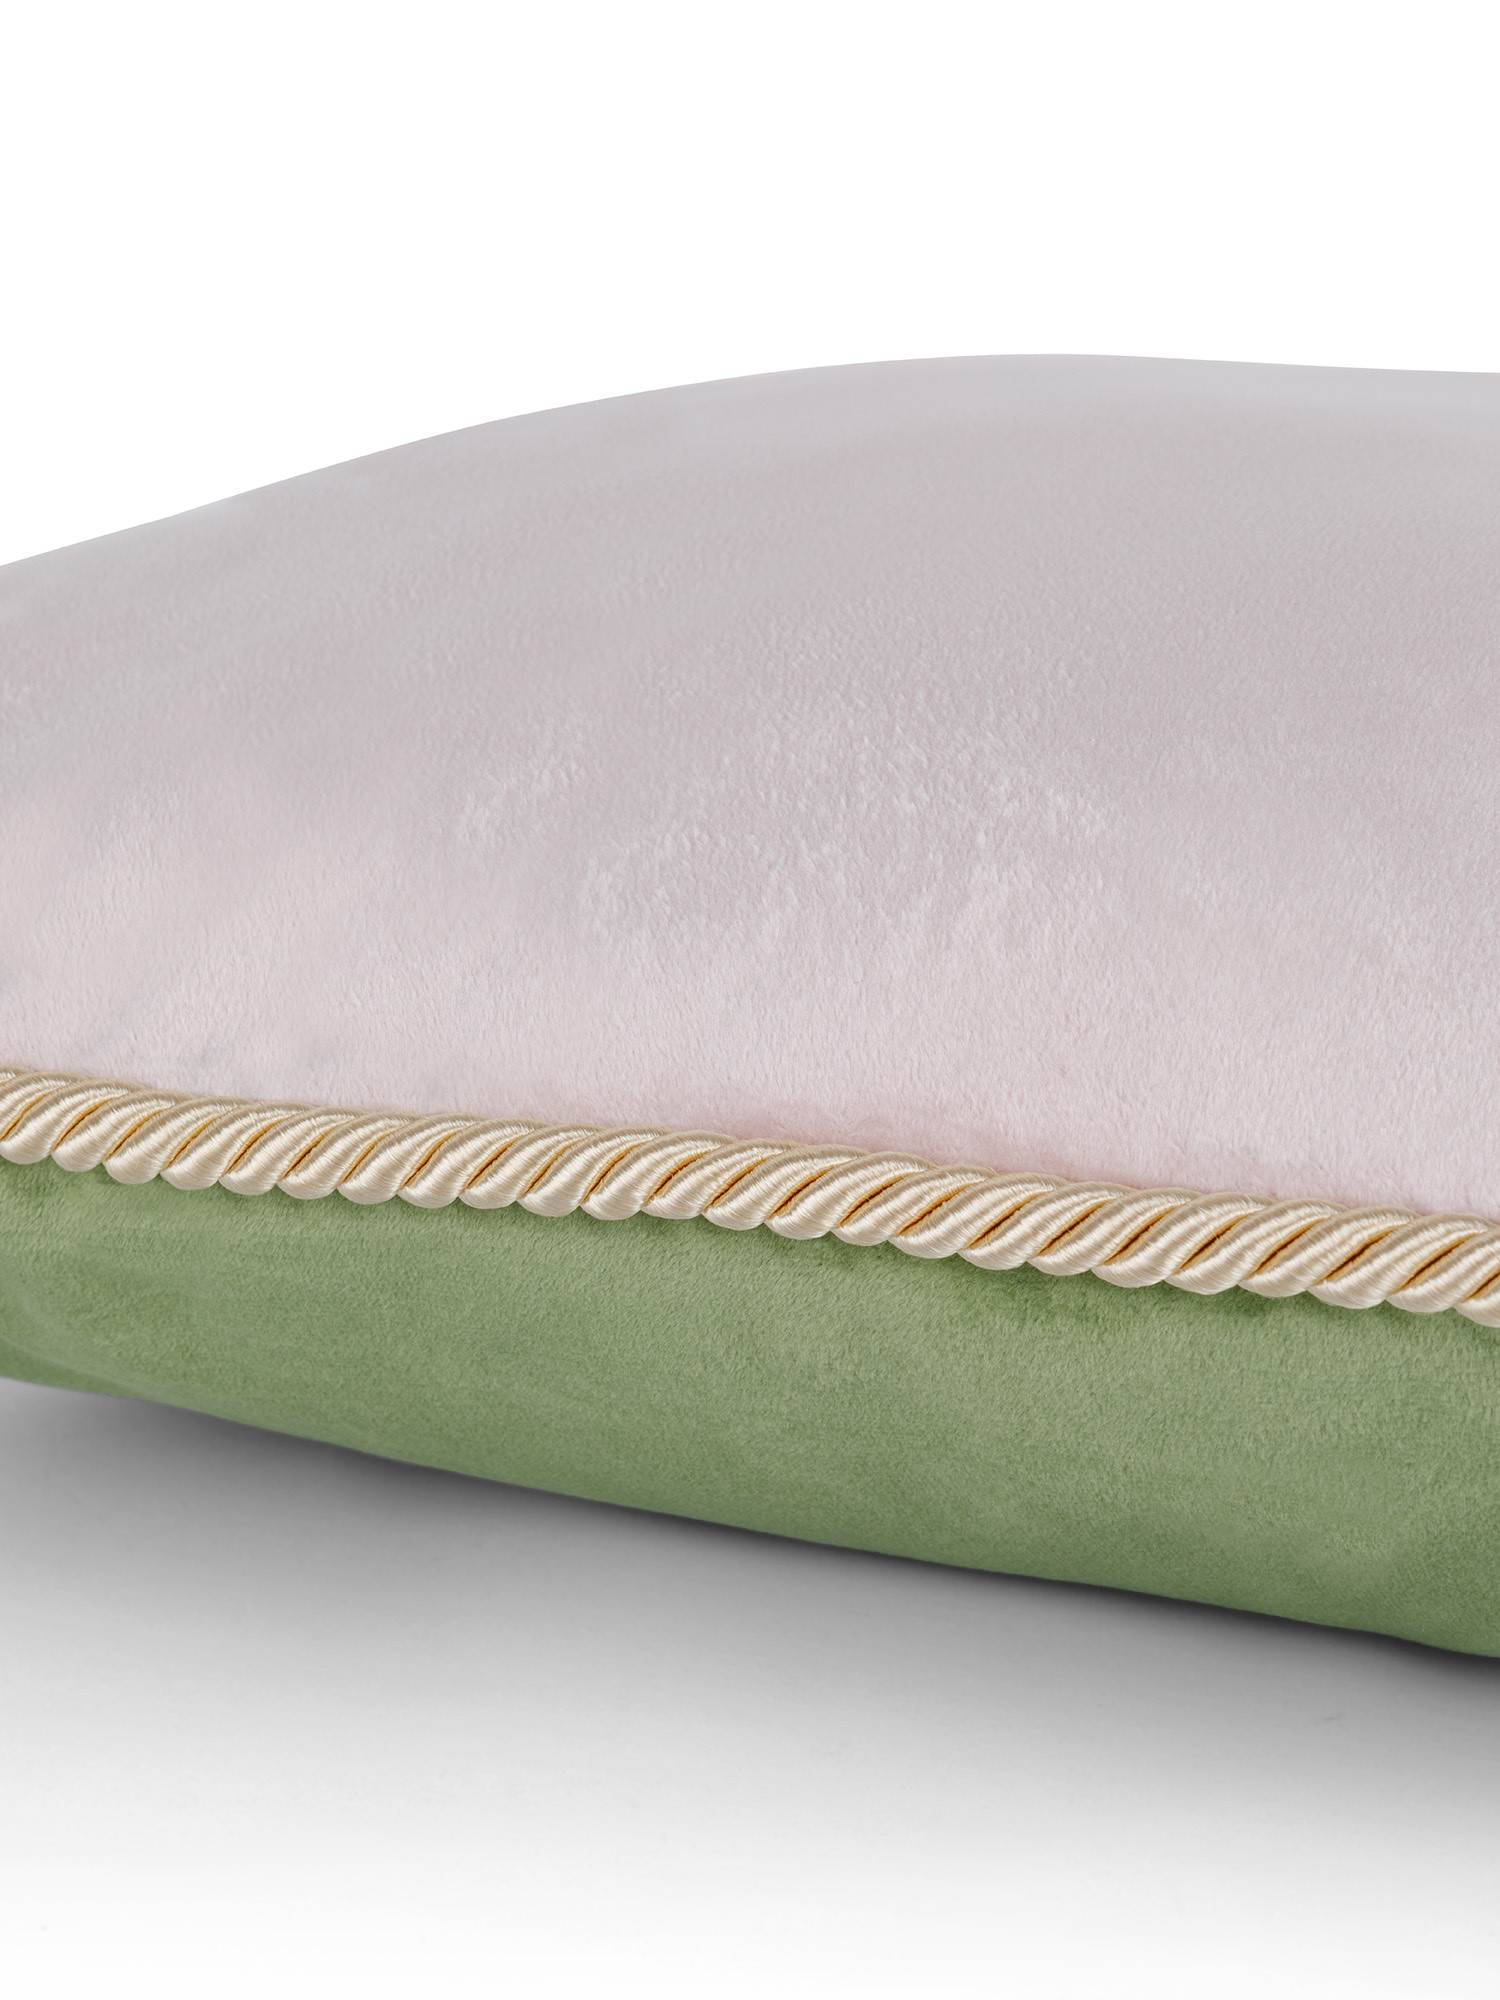 Cuscino in velluto bicolore 45x45 cm, Verde, large image number 2